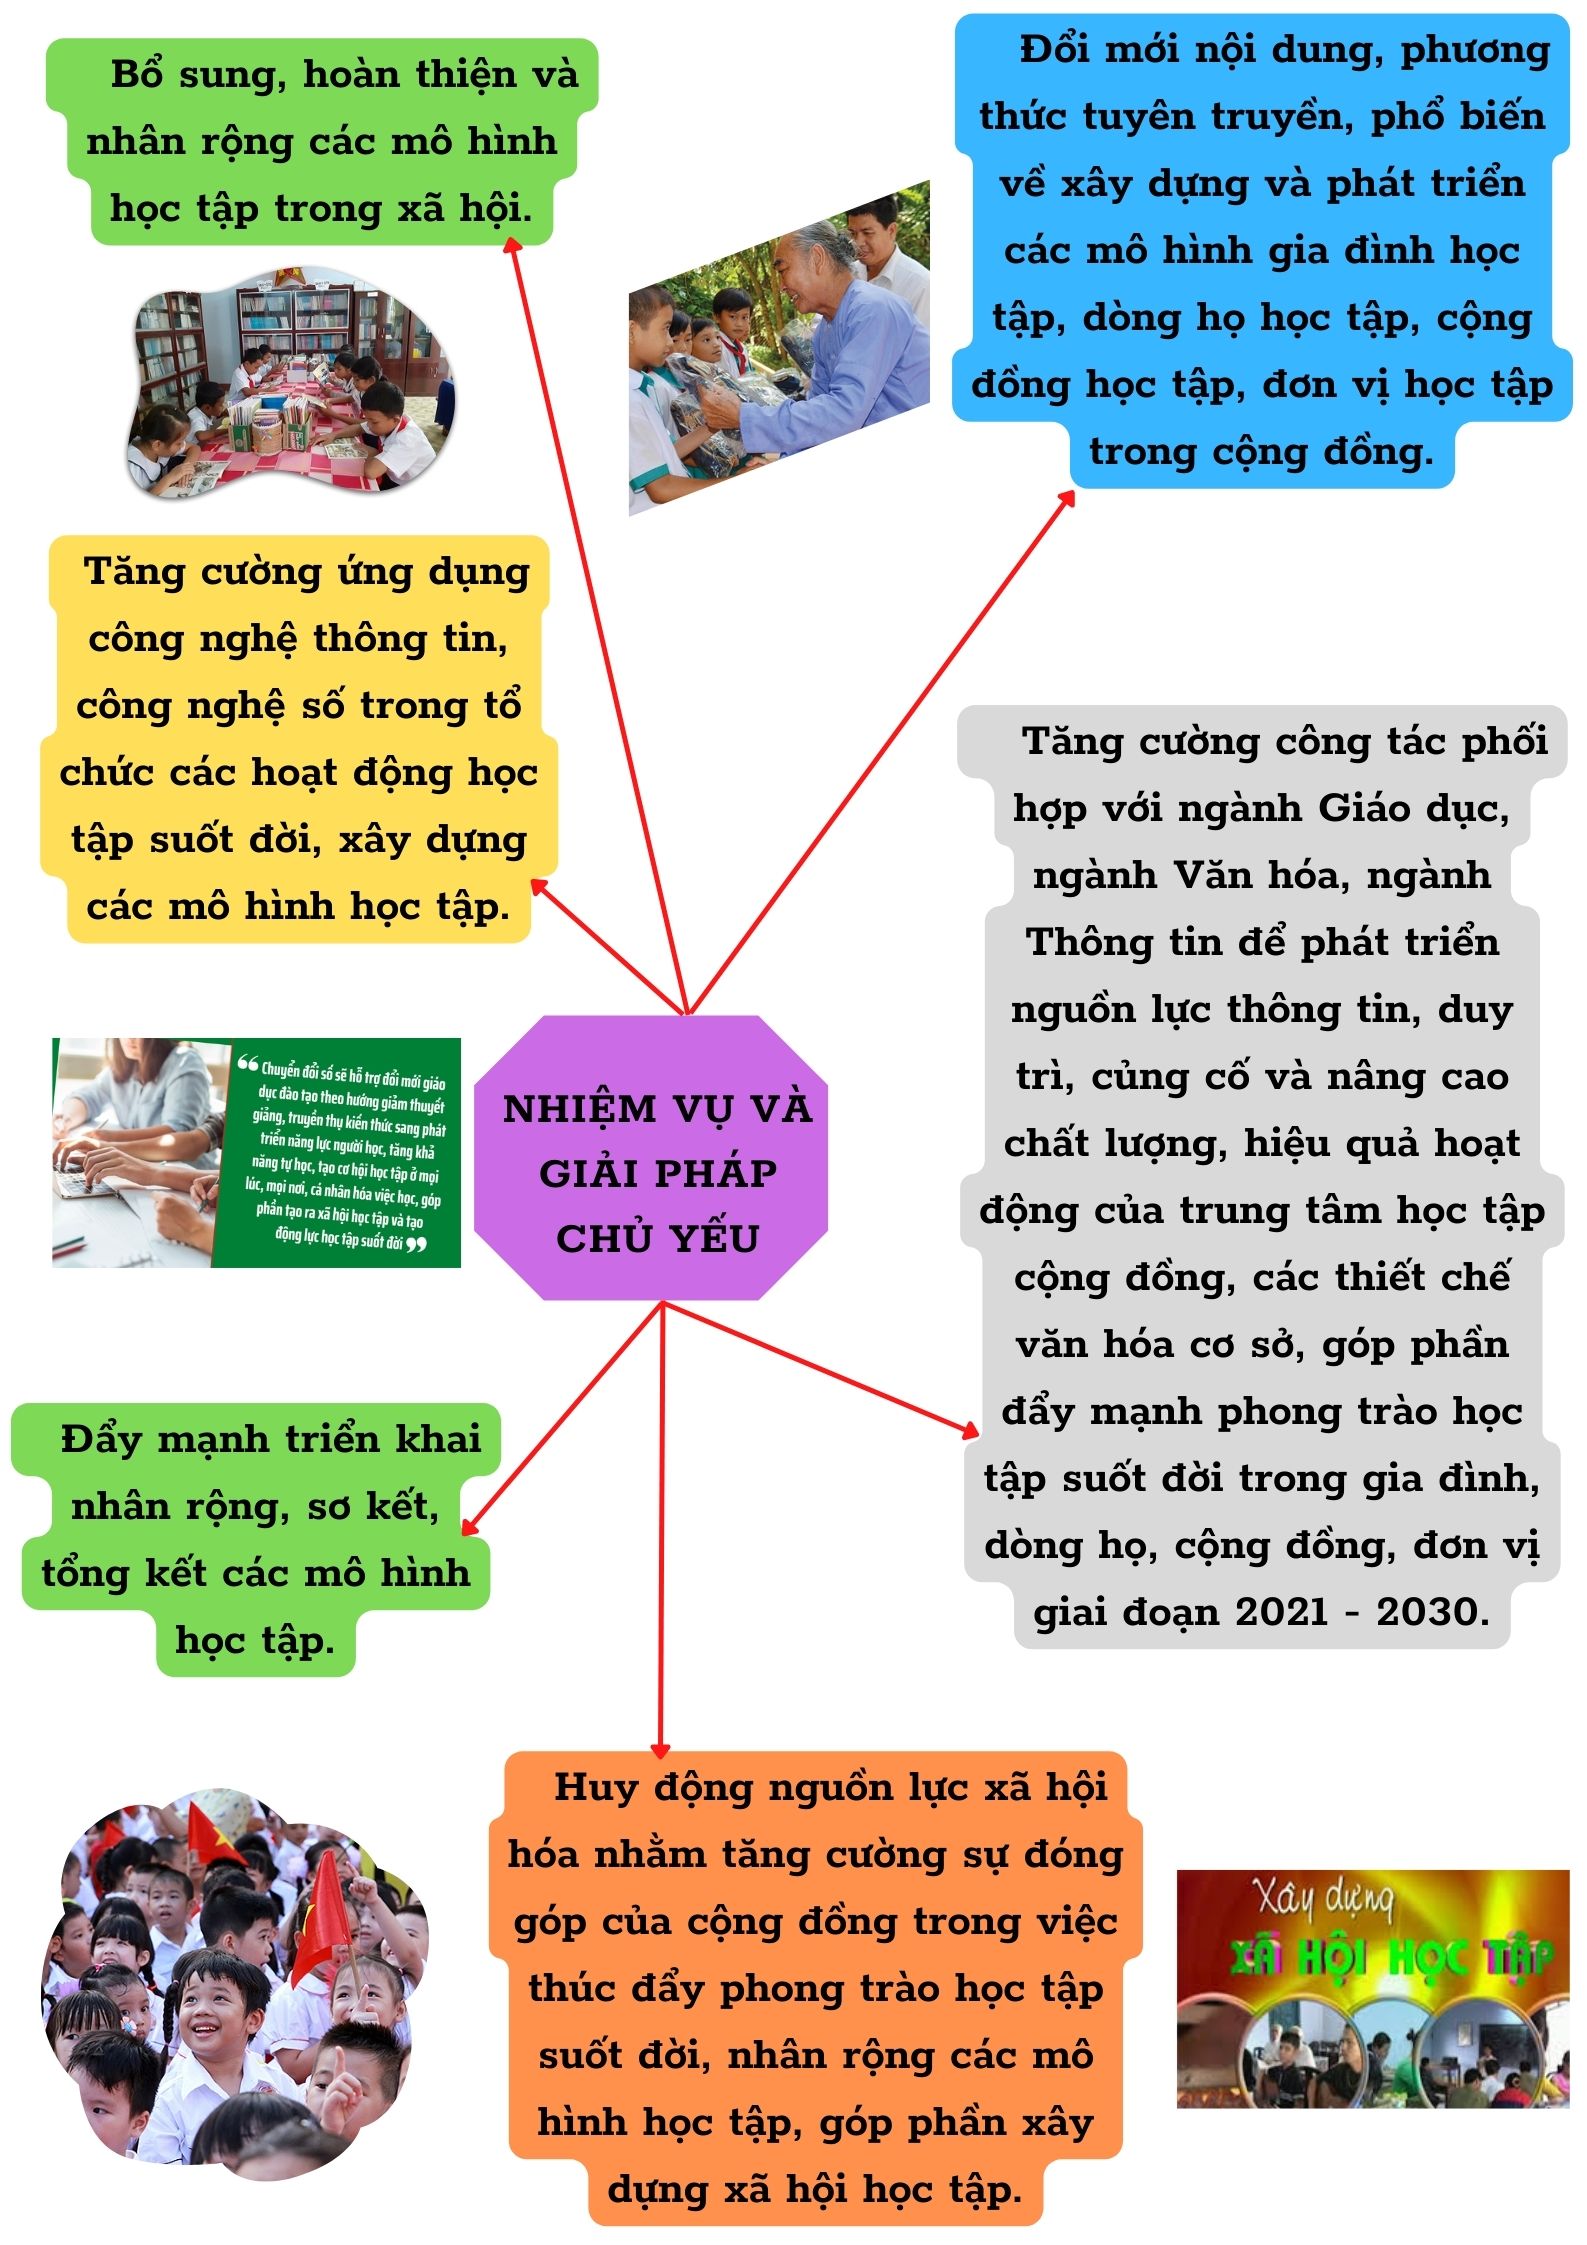 Hàm Thuận BắcNhân rộng các mô hình học tập suốt đời